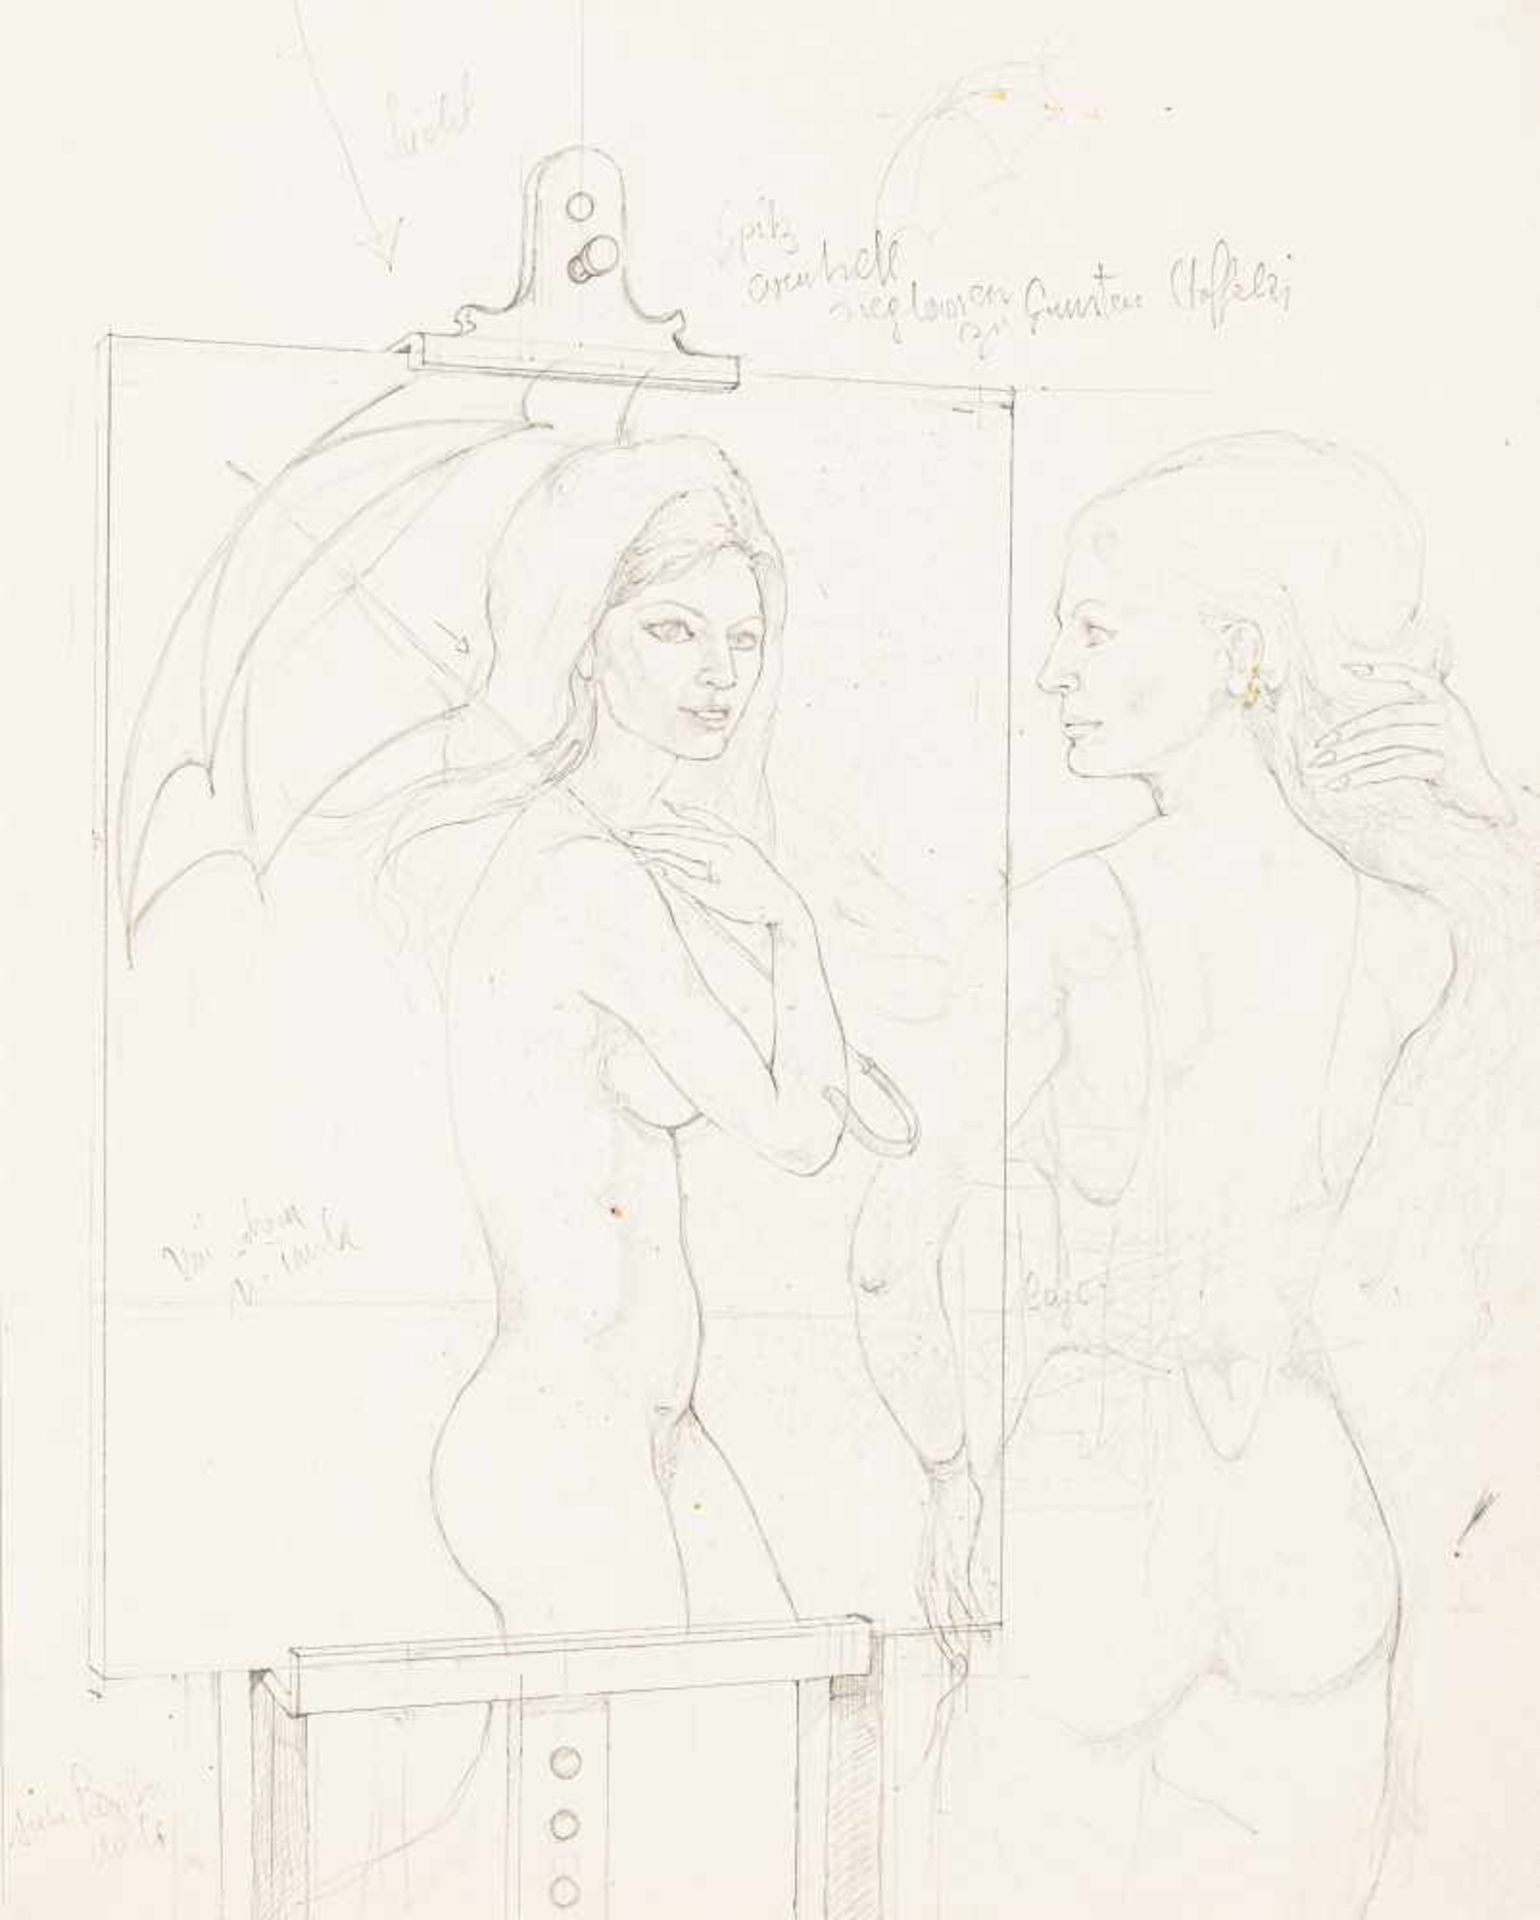 Helmut LeherbWien 1933 - 1997 WienFrau im SpiegelBleistift auf Papier / pencil on paper50 x 40 cm (